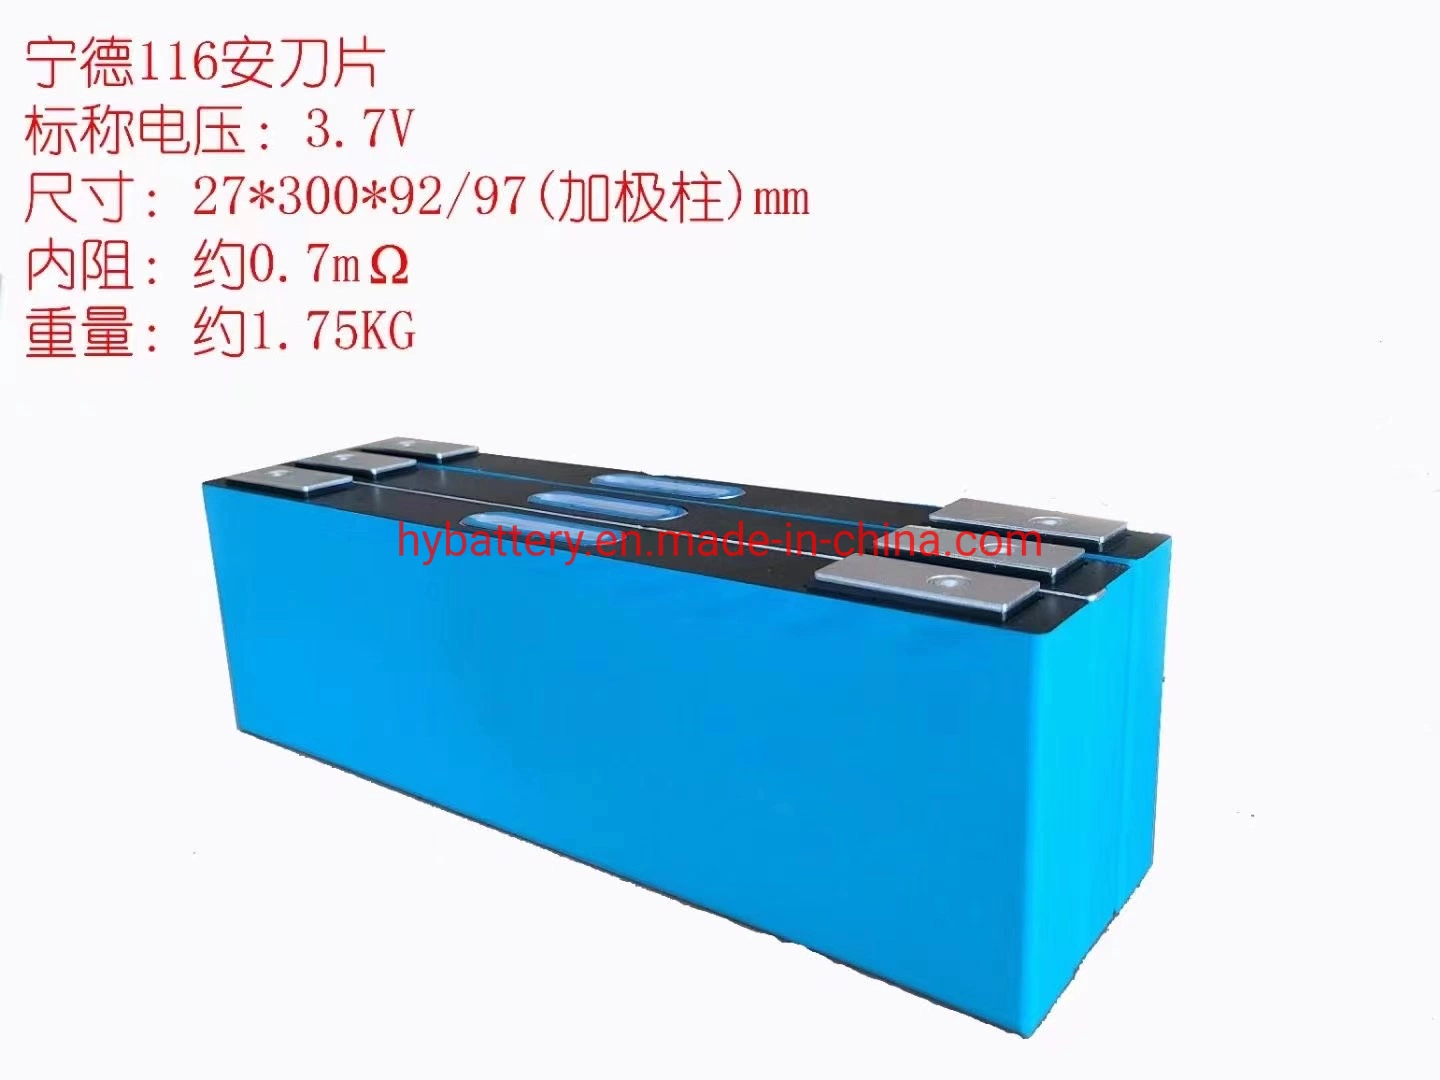 3,7V 117Ah Catl prismáticos de iones de litio 117Ah 120Ah Nmc 3c Catl grado una batería recargable Nmc batería de coche eléctrico